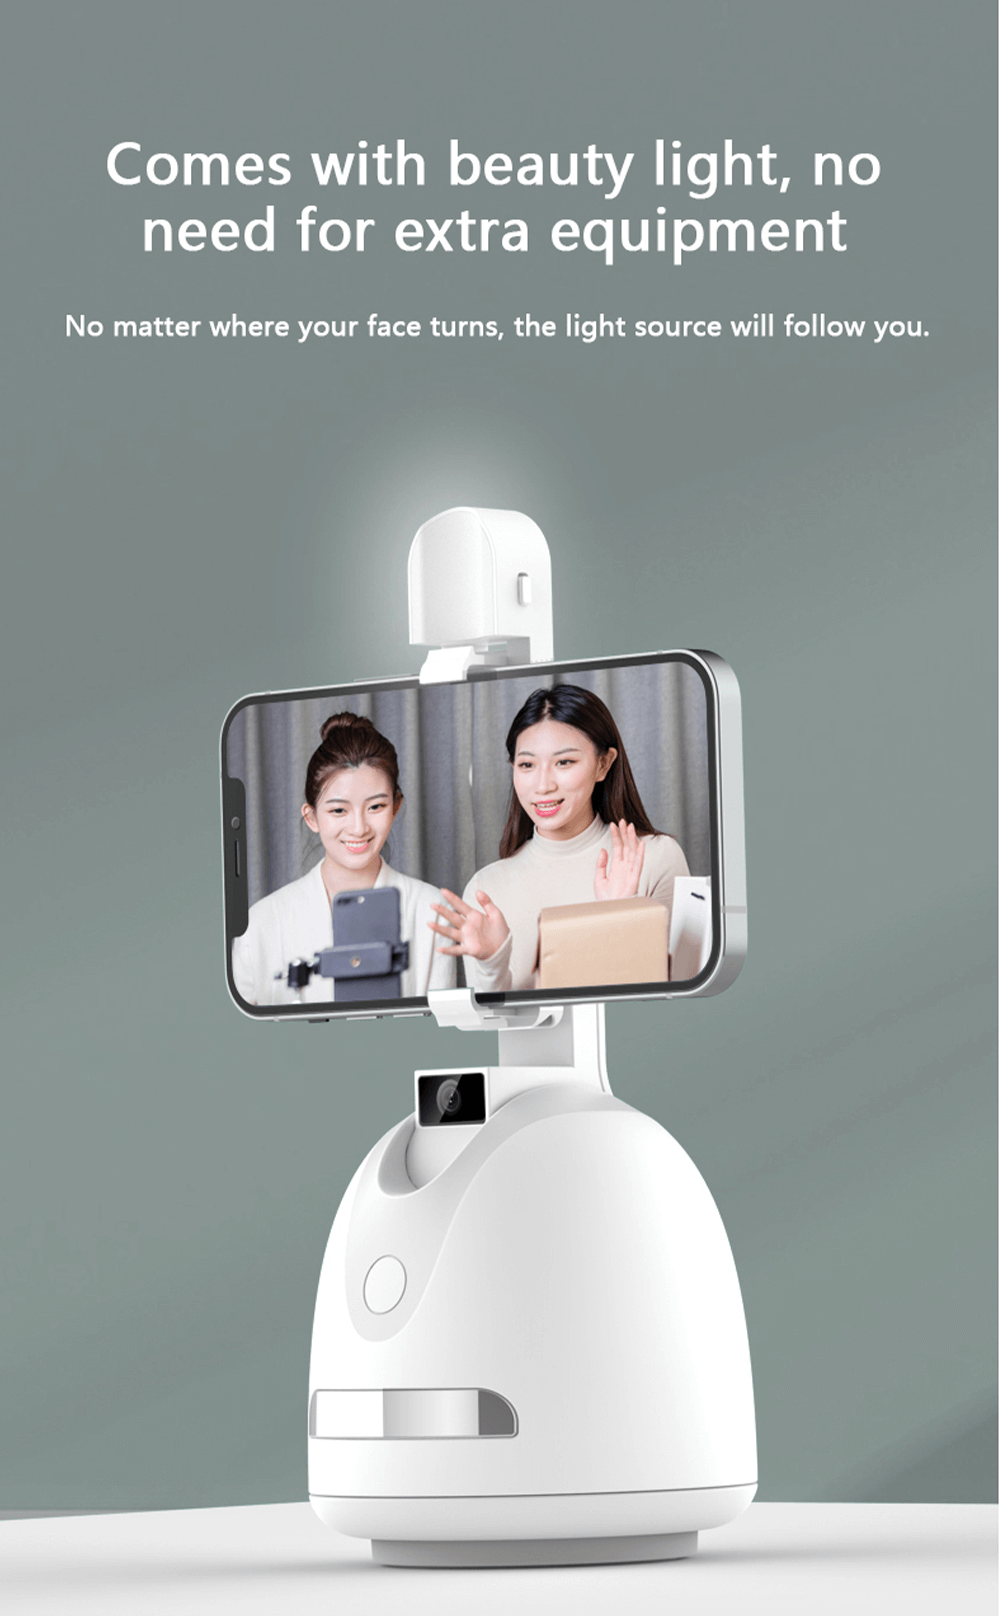 Soporte para Vlog de teléfono inteligente con seguimiento facial de 360°-Shenzhen Shengye Technology Co.,Ltd